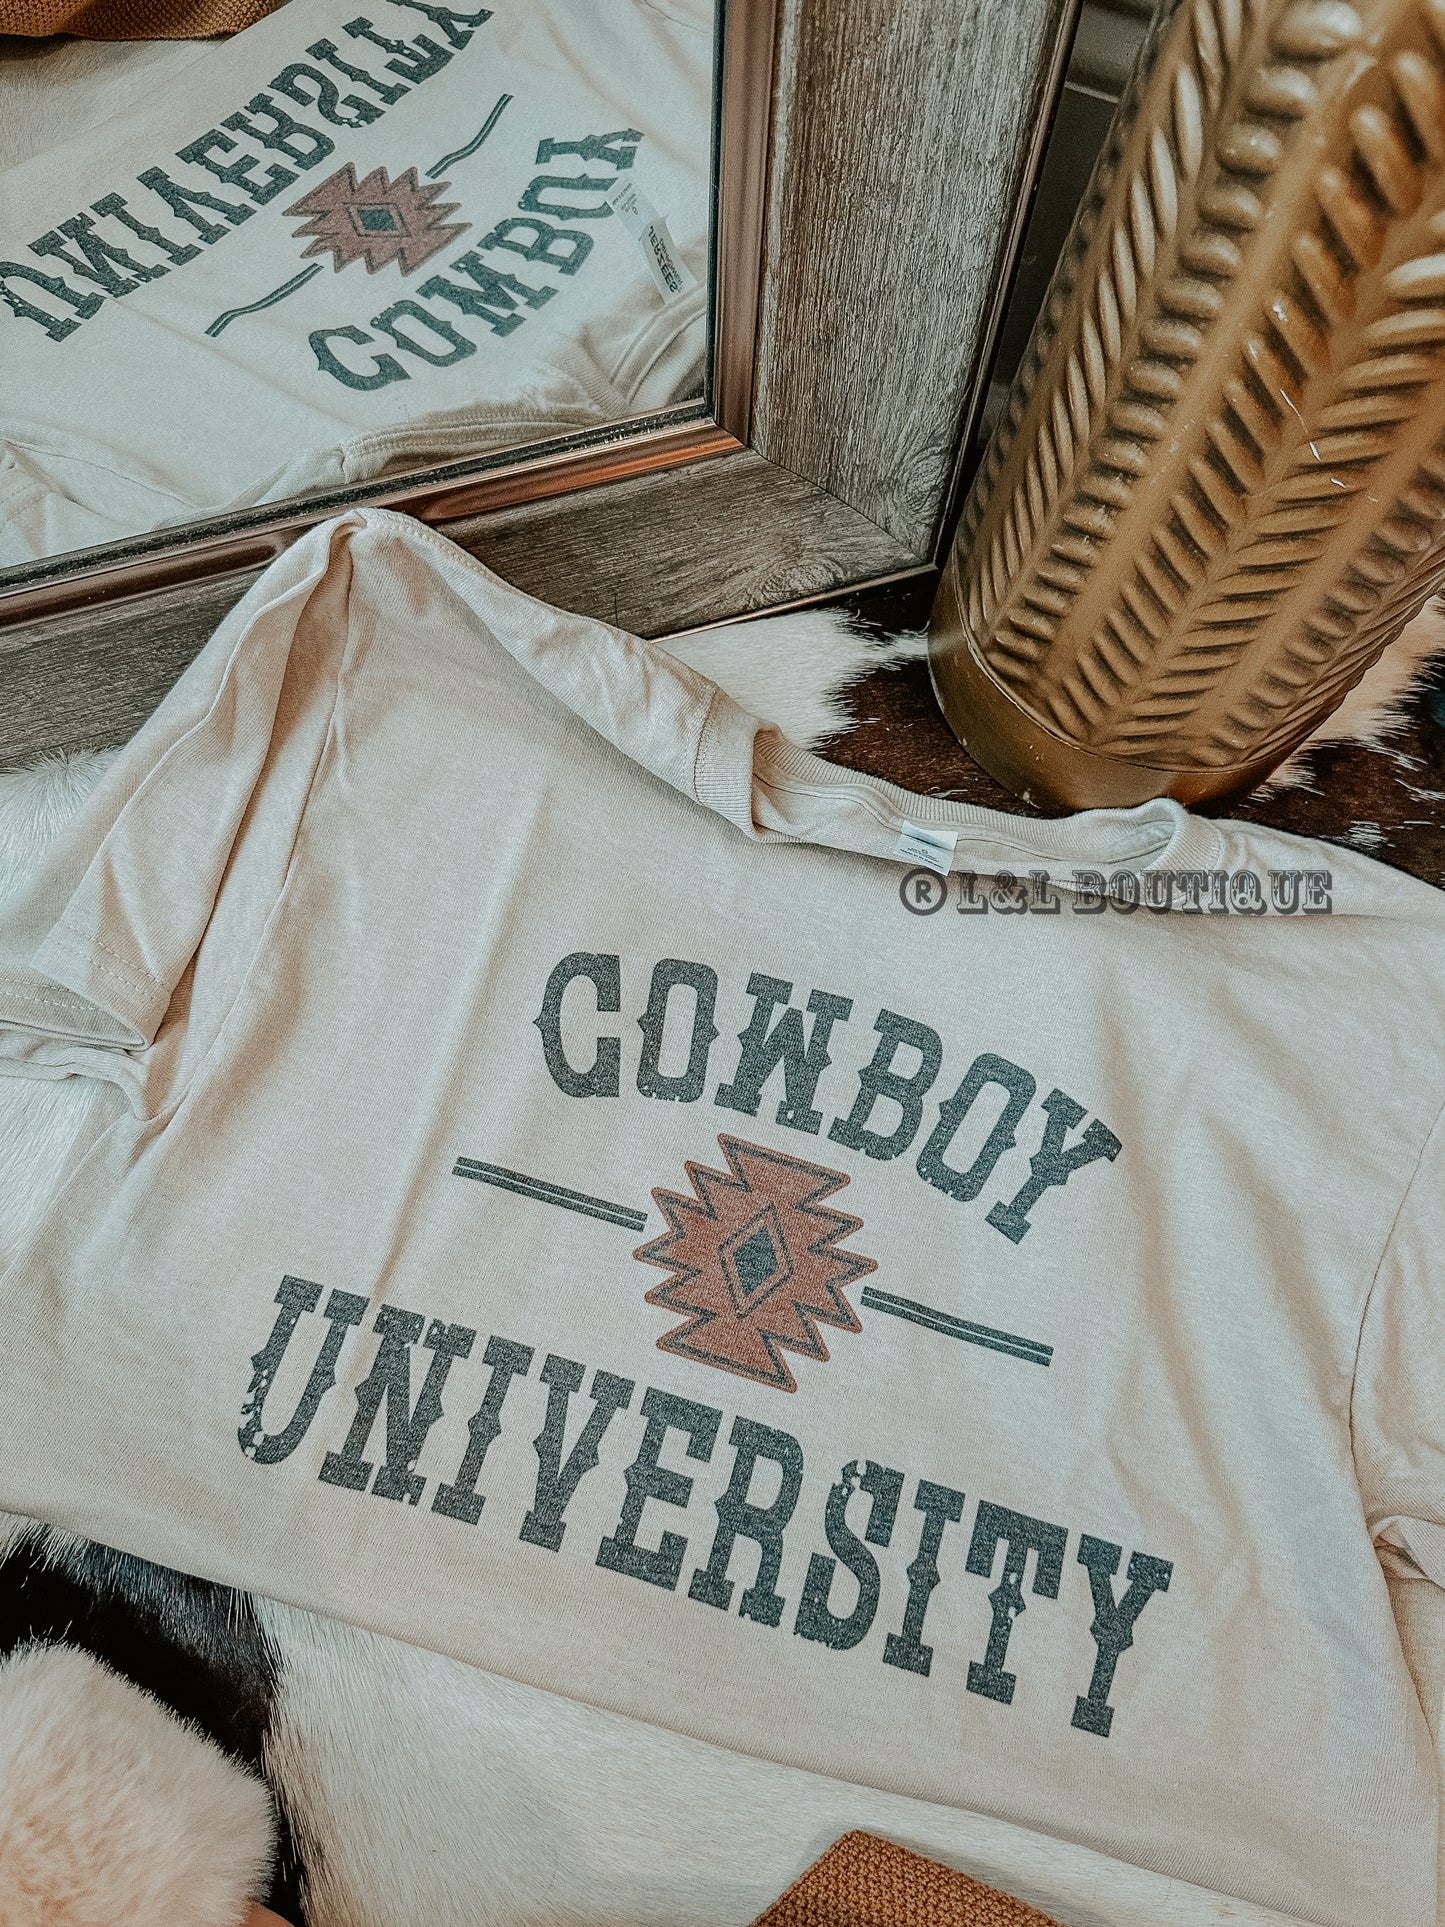 Cowboy University Tshirt